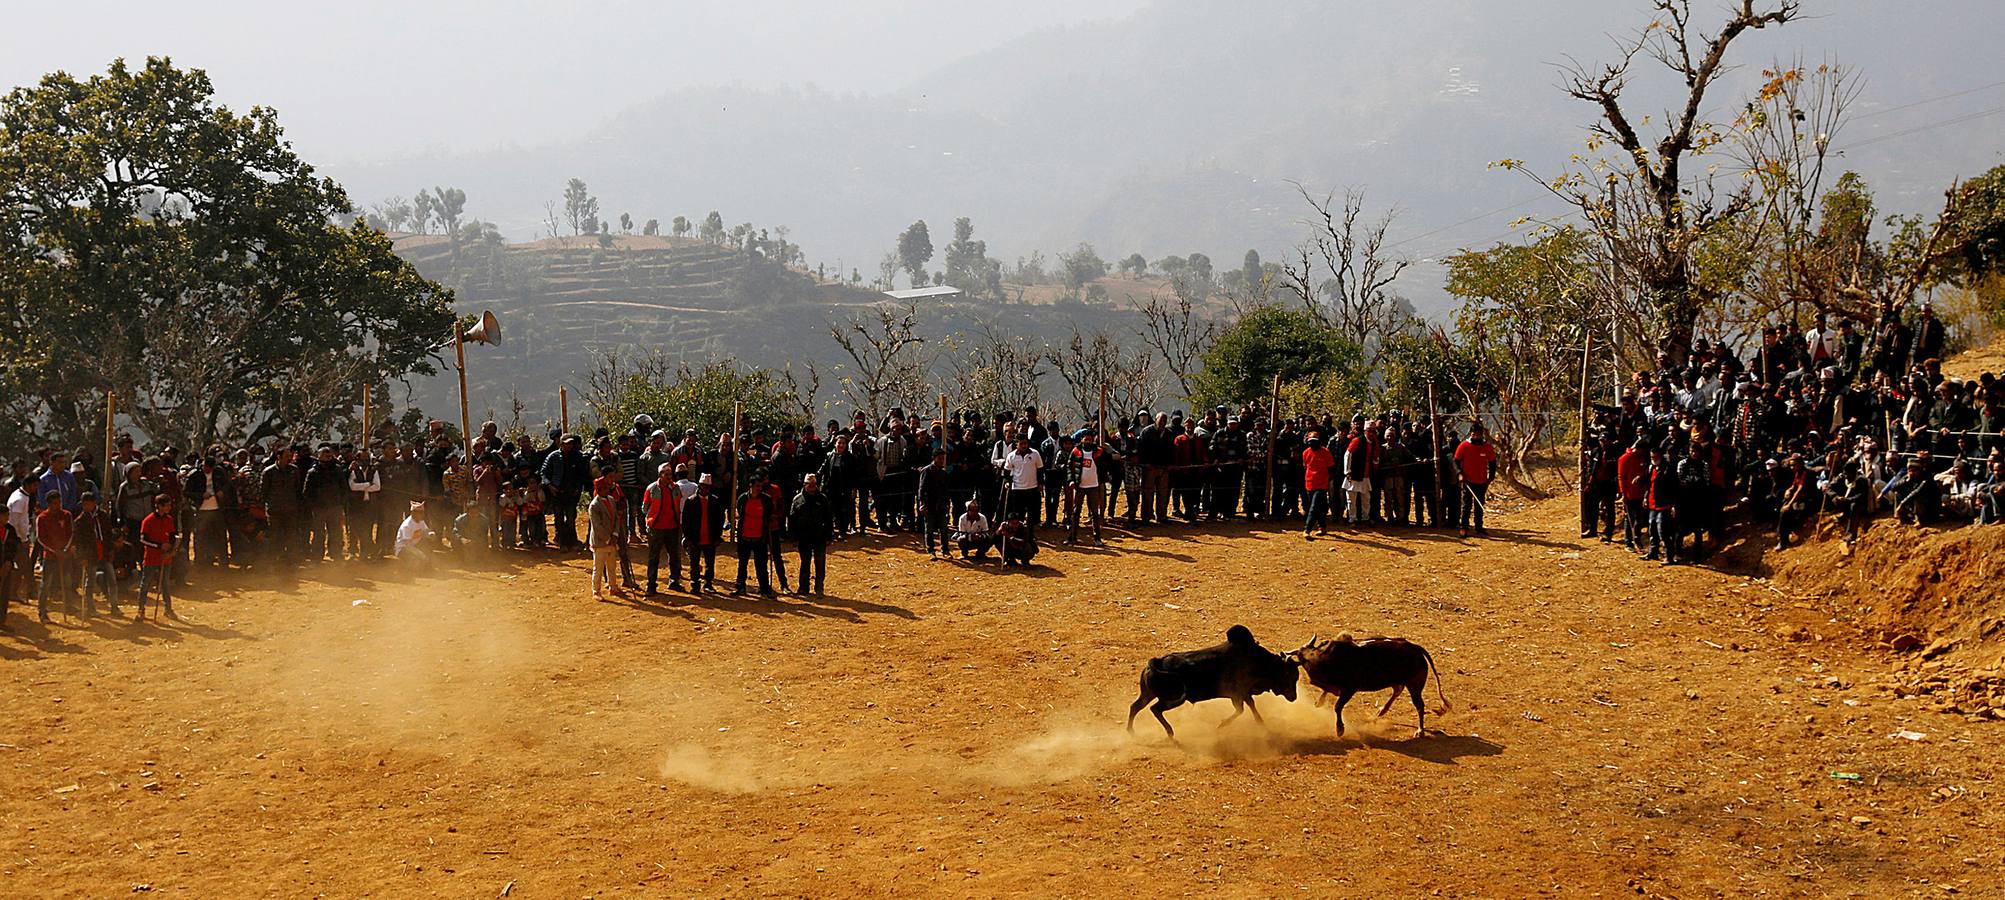 En la aldea nepalí de Talukachandani, en las estribaciones del Himalaya, los toros pelean para conmemorar el Maghesangranti, un festival centenario que anuncia el fin del invierno y el comienzo de los días más largos y cálidos del año. Para participar en esta celebración, los animales son alimentados con una dieta especial de arroz, huevos y lentejas a partir de los cinco meses. Las reglas establecen que la pelea termina cuando uno de los animales se cansa y deja de acometer a su oponente. El ganador recibe un premio de unos 25 euros.